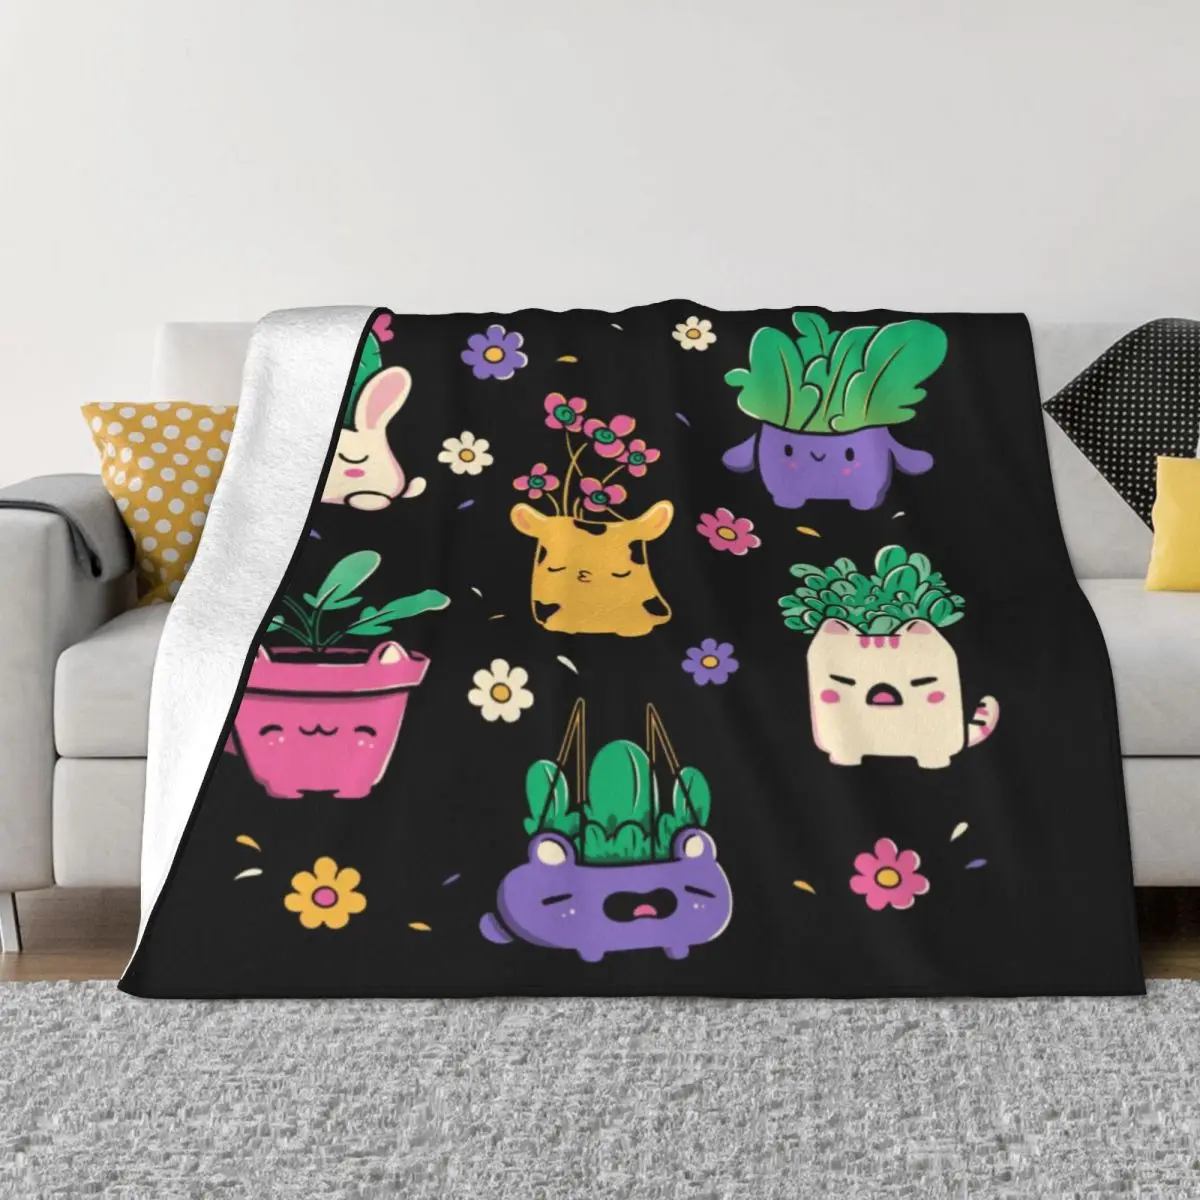 

Happy Plants Kawaii Soft Micro Fleece Blanket Cute Warm Great Gift Multi Styles